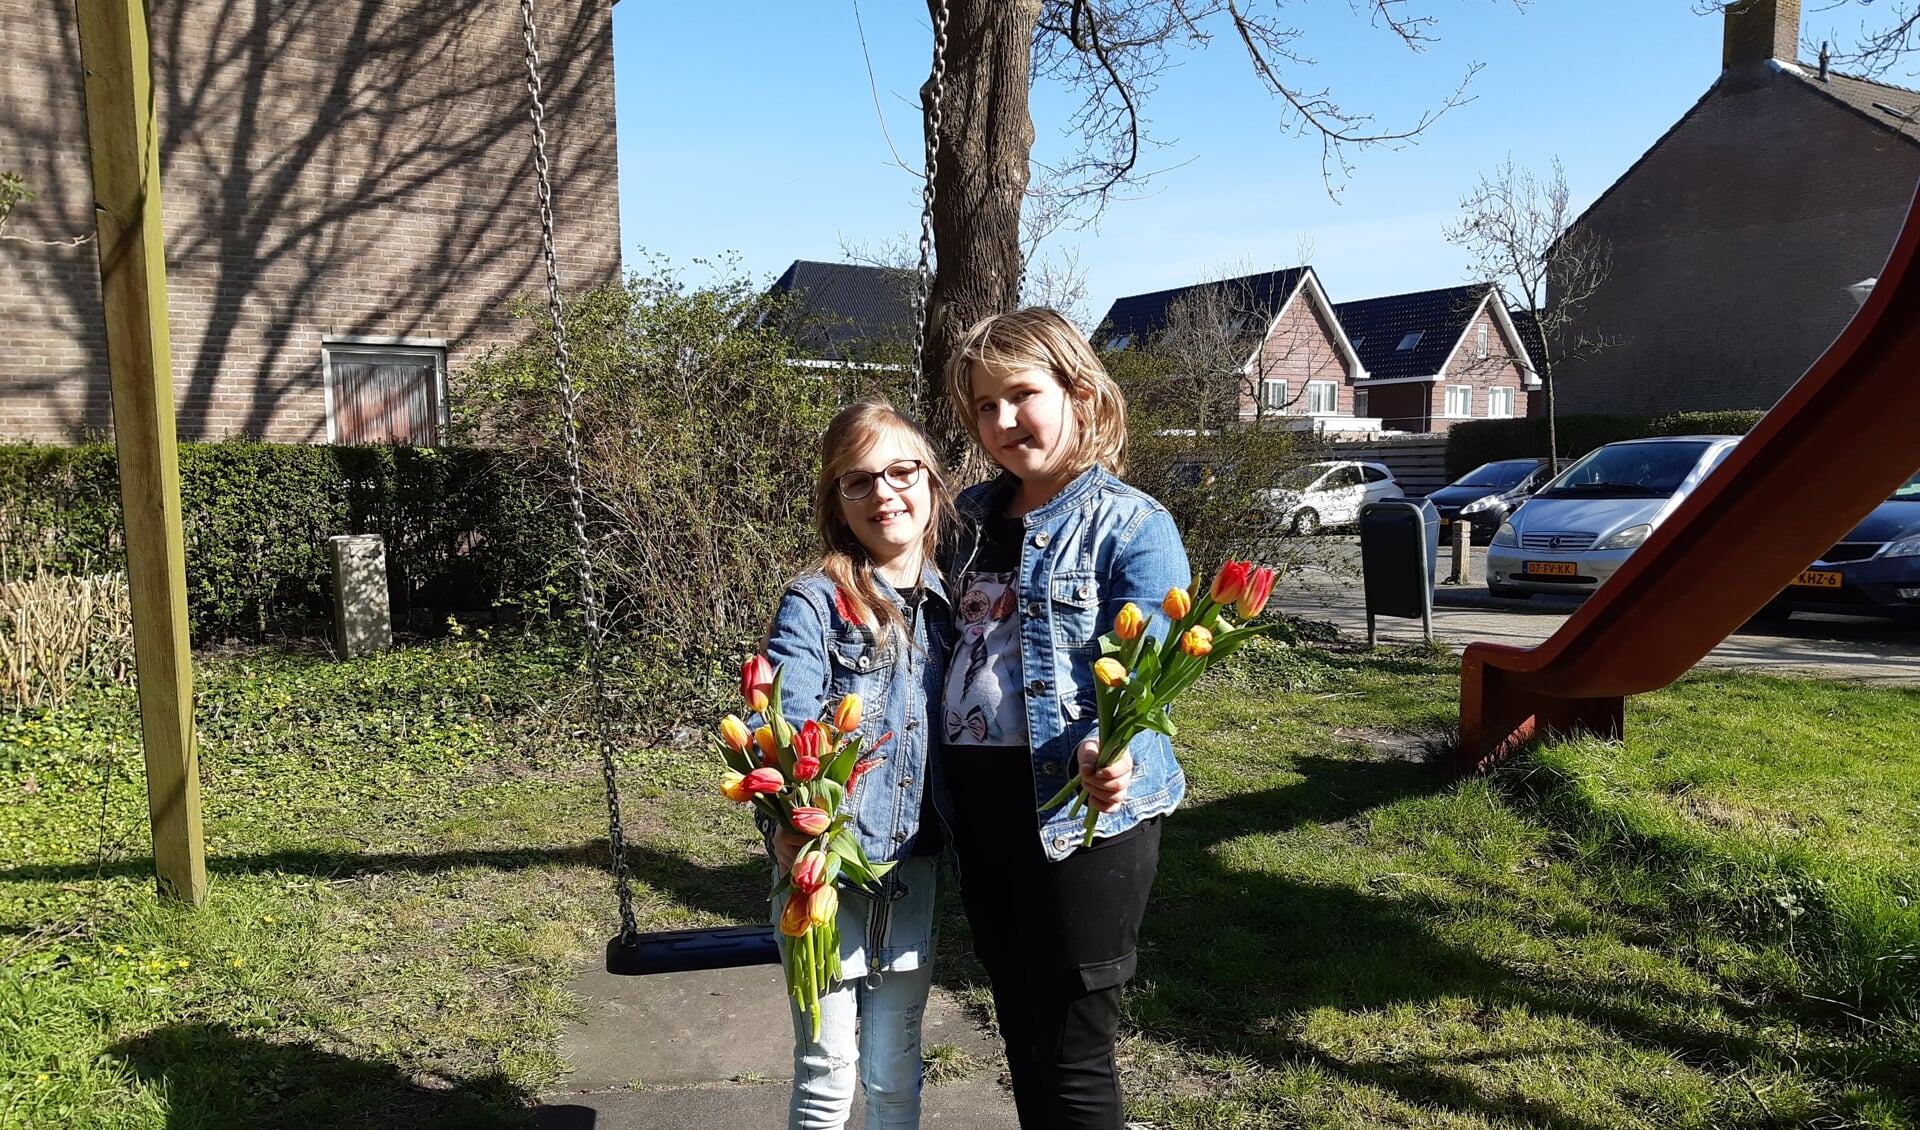 De zussen Charisa (r) en Charill hebben tulpen rondgebracht in hun eigen buurt in Zwaag.